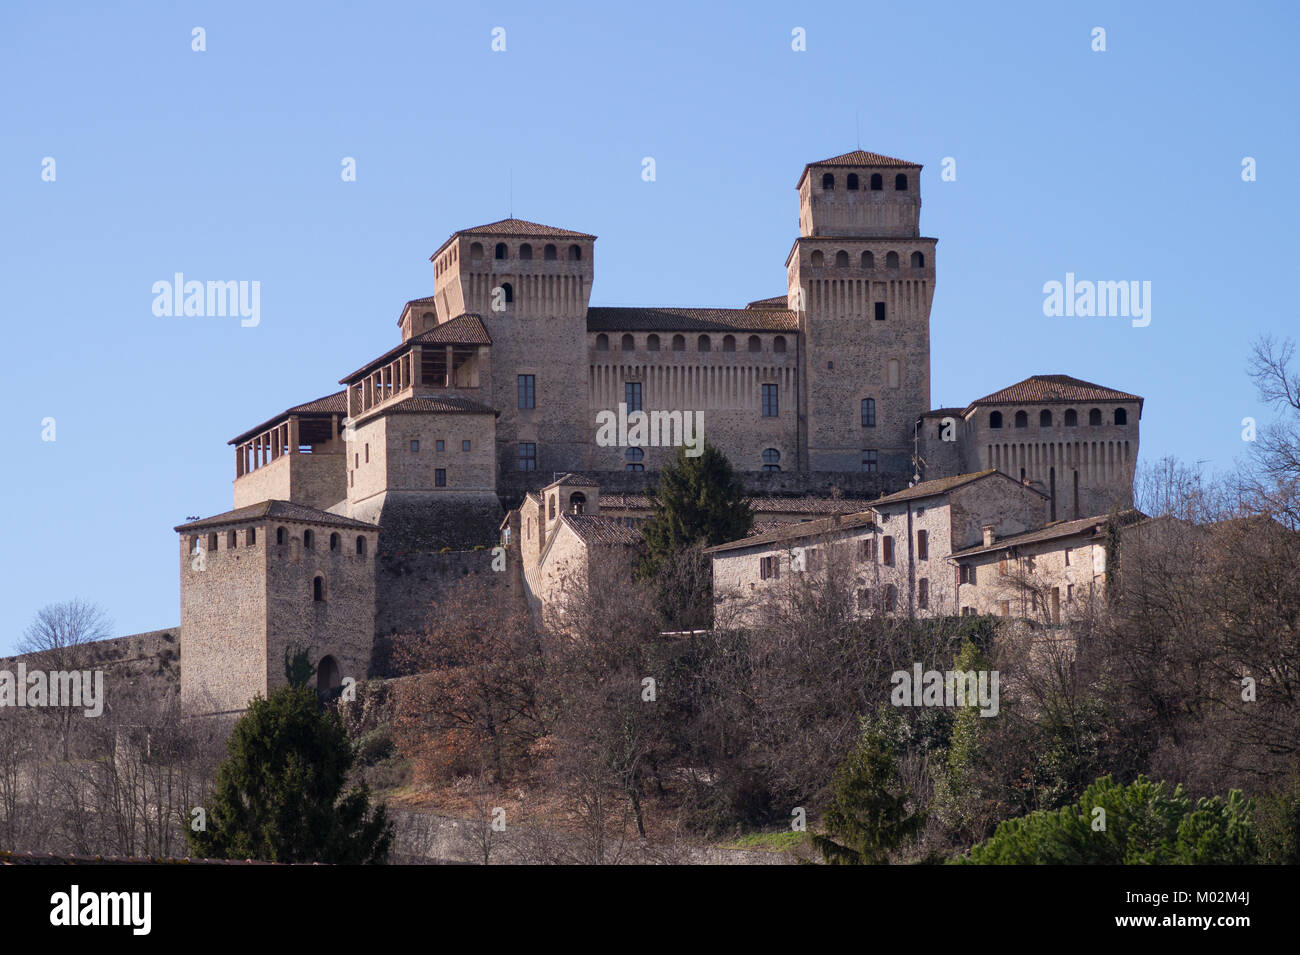 Schloss von Torrechiara, mittelalterliche Festung aus dem 15. Jahrhundert und Palast in Langhirano in der Nähe von Parma, Emilia Romagna, Norditalien, Außenansicht Stockfoto